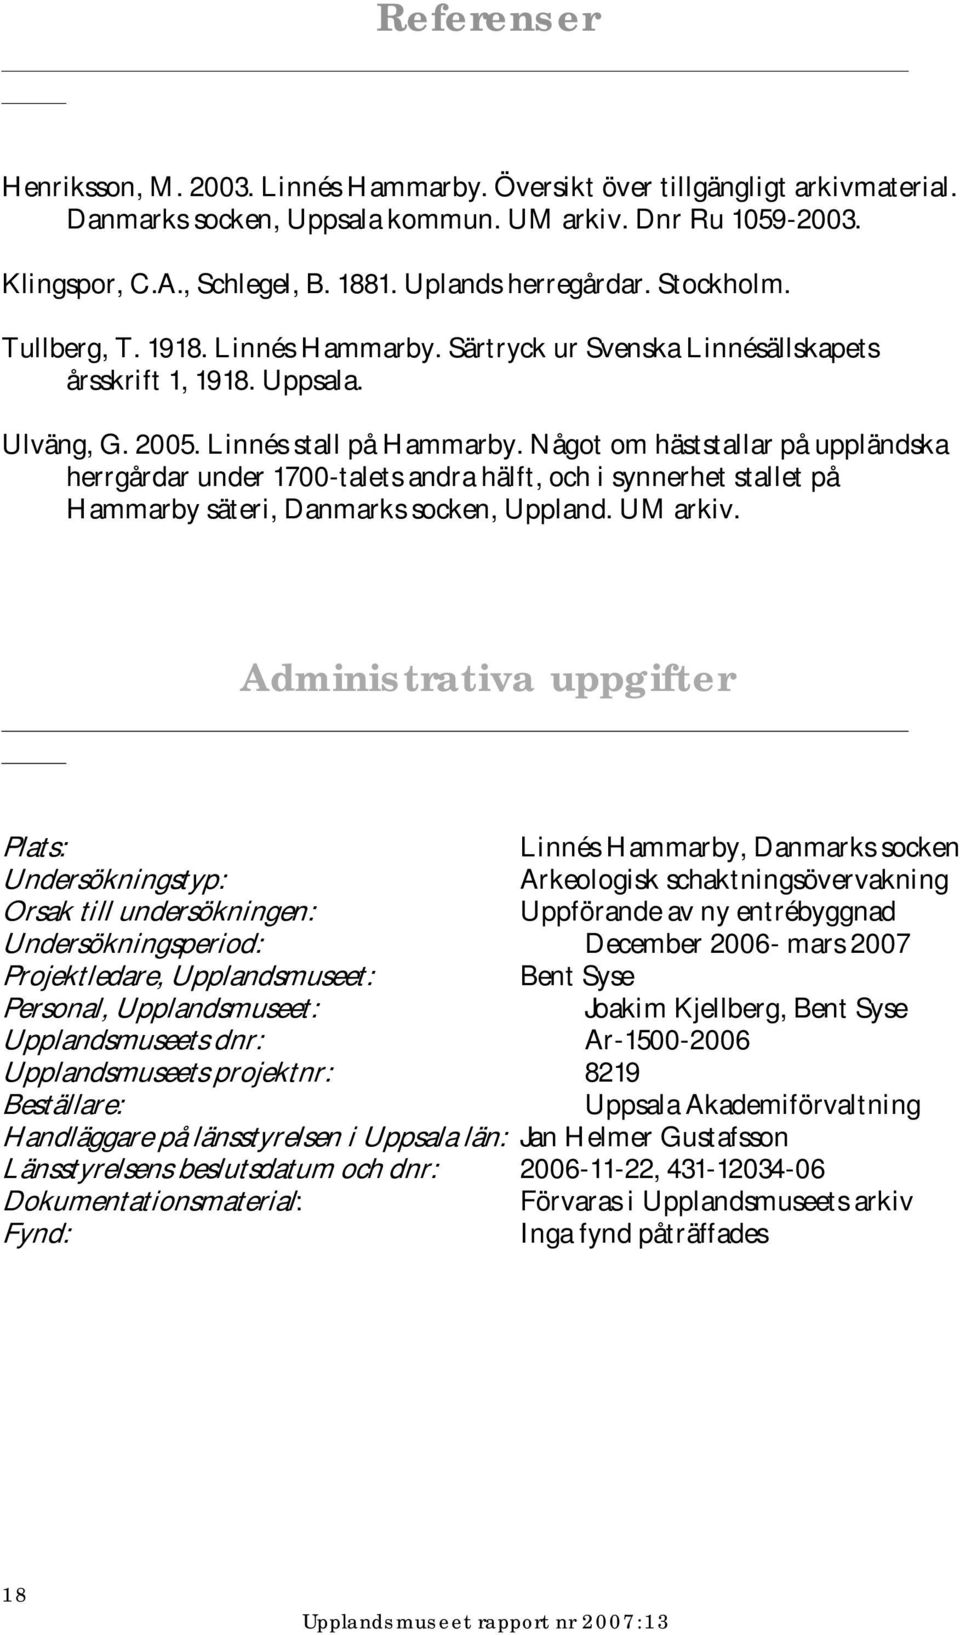 Något om häststallar på uppländska herrgårdar under 1700-talets andra hälft, och i synnerhet stallet på Hammarby säteri, Danmarks socken, Uppland. UM arkiv.